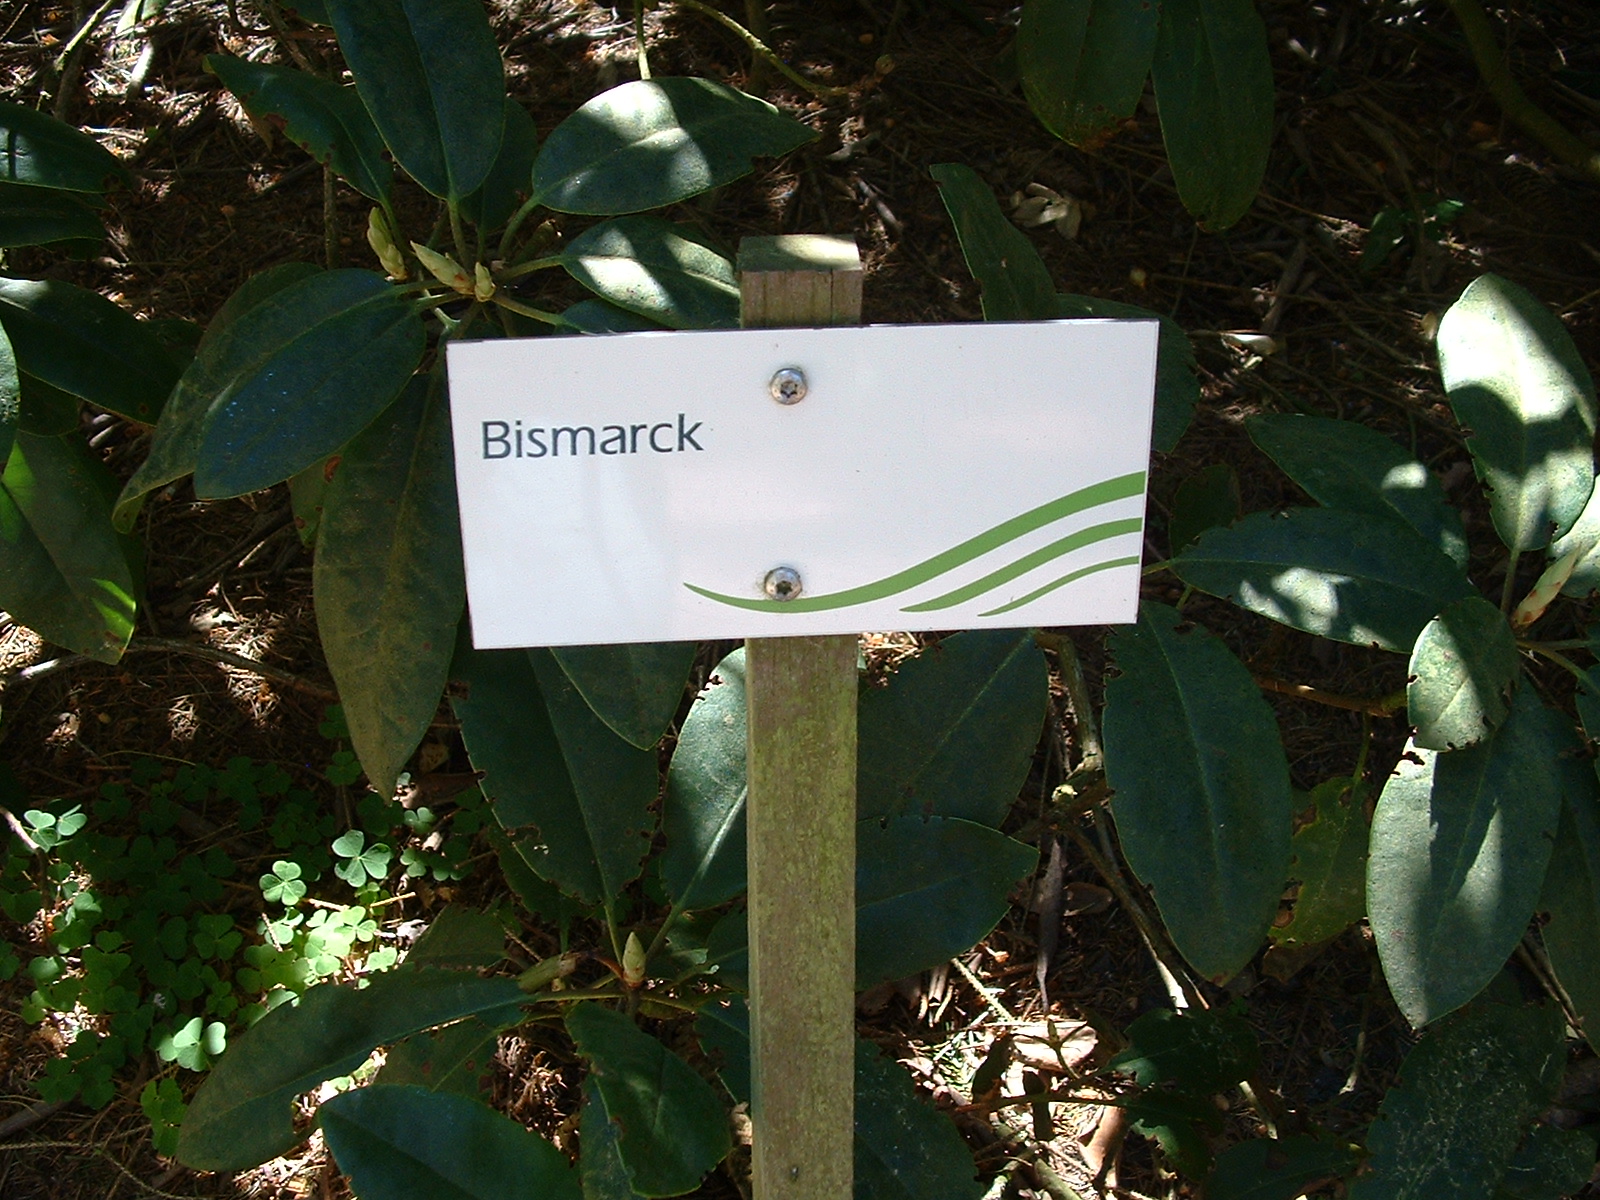 BRUNS Rhododendron Park in Gristede - Bismark